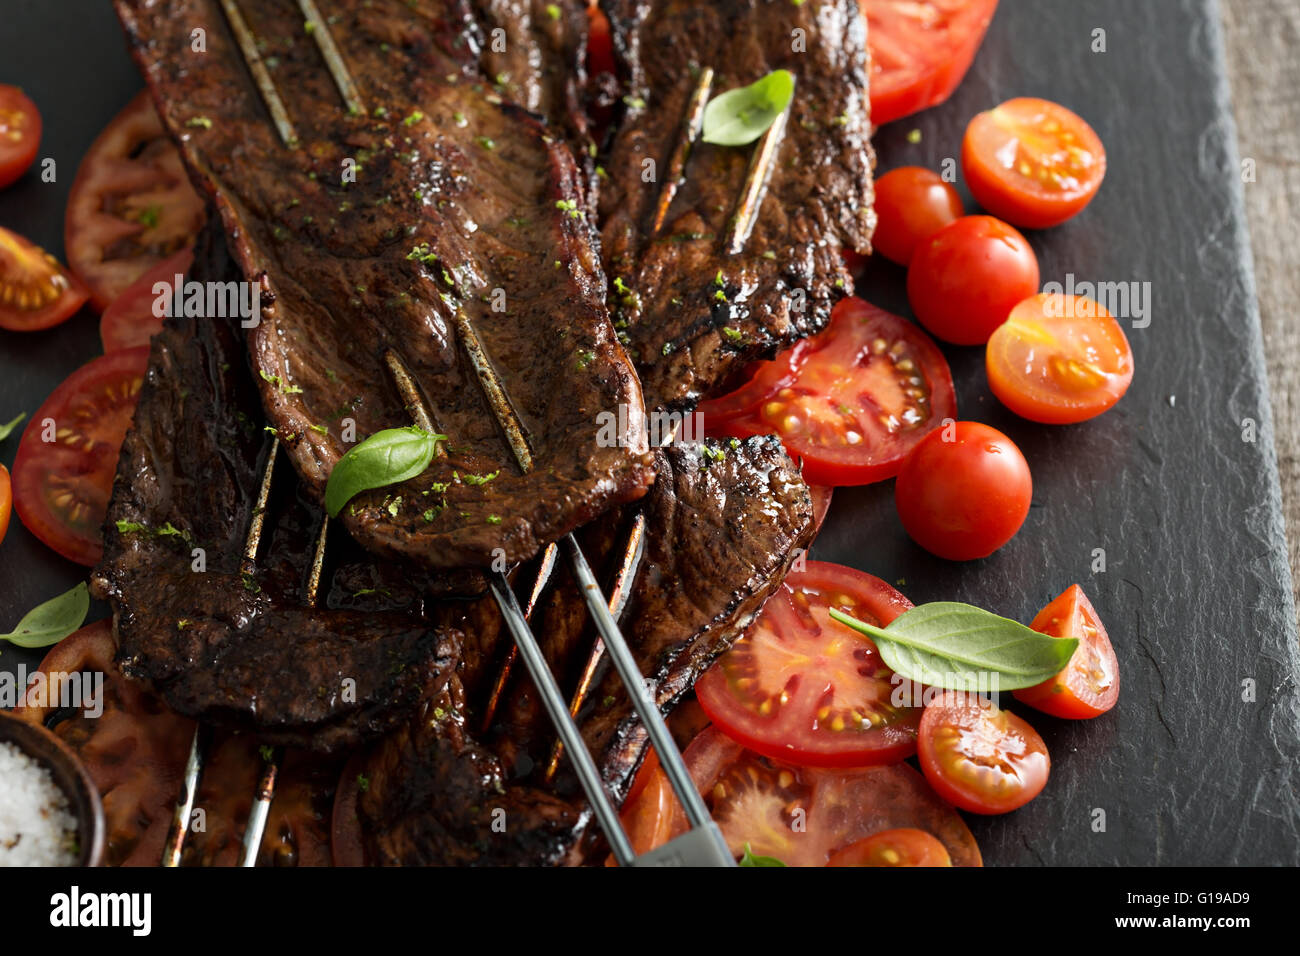 Flanke Steak am Spieß mit Tomaten Stockfotografie - Alamy